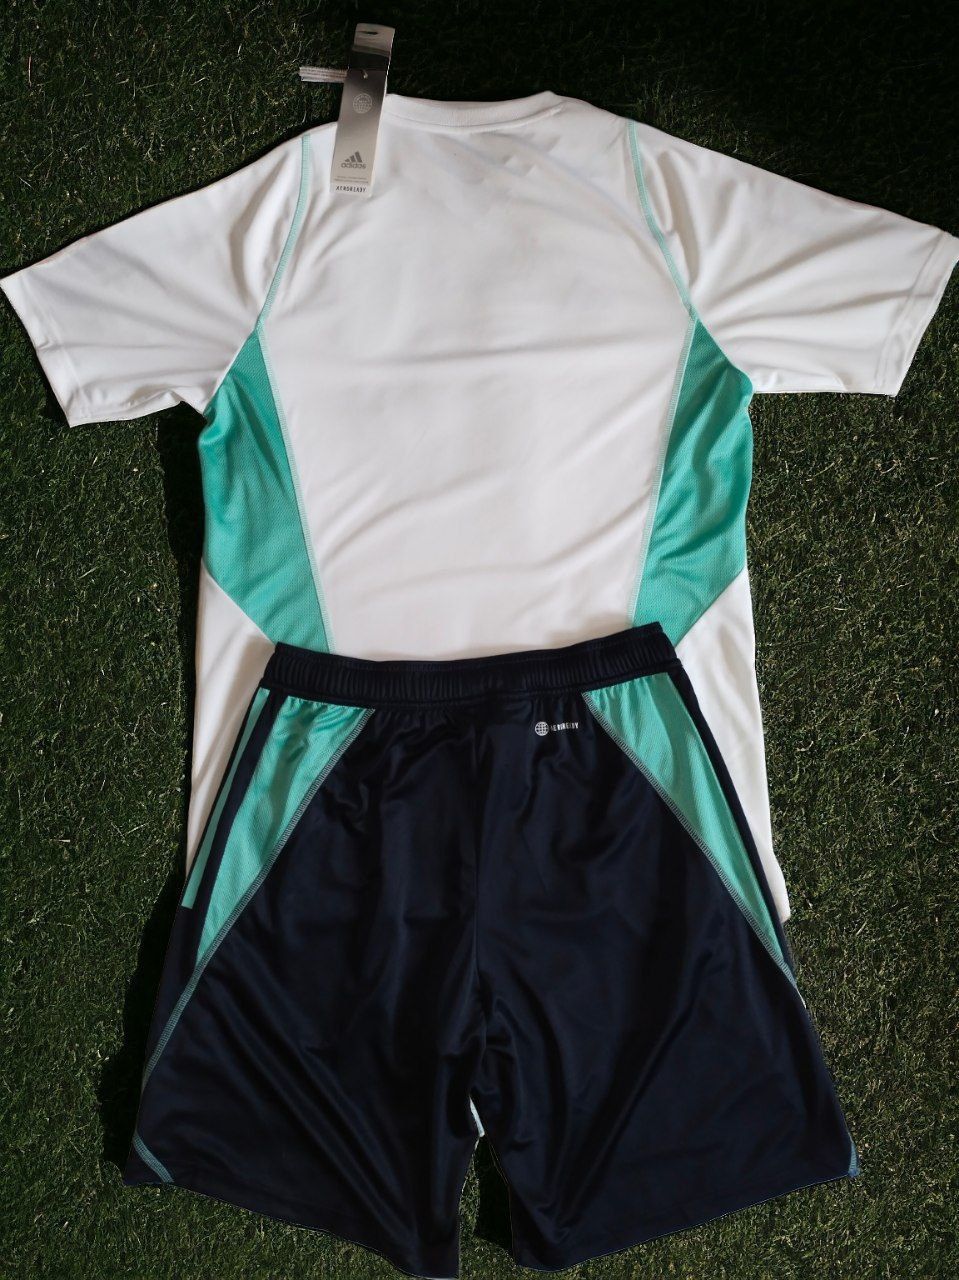 Нова тренувальна форма Inter Miami від Adidas, 100% оригінал.